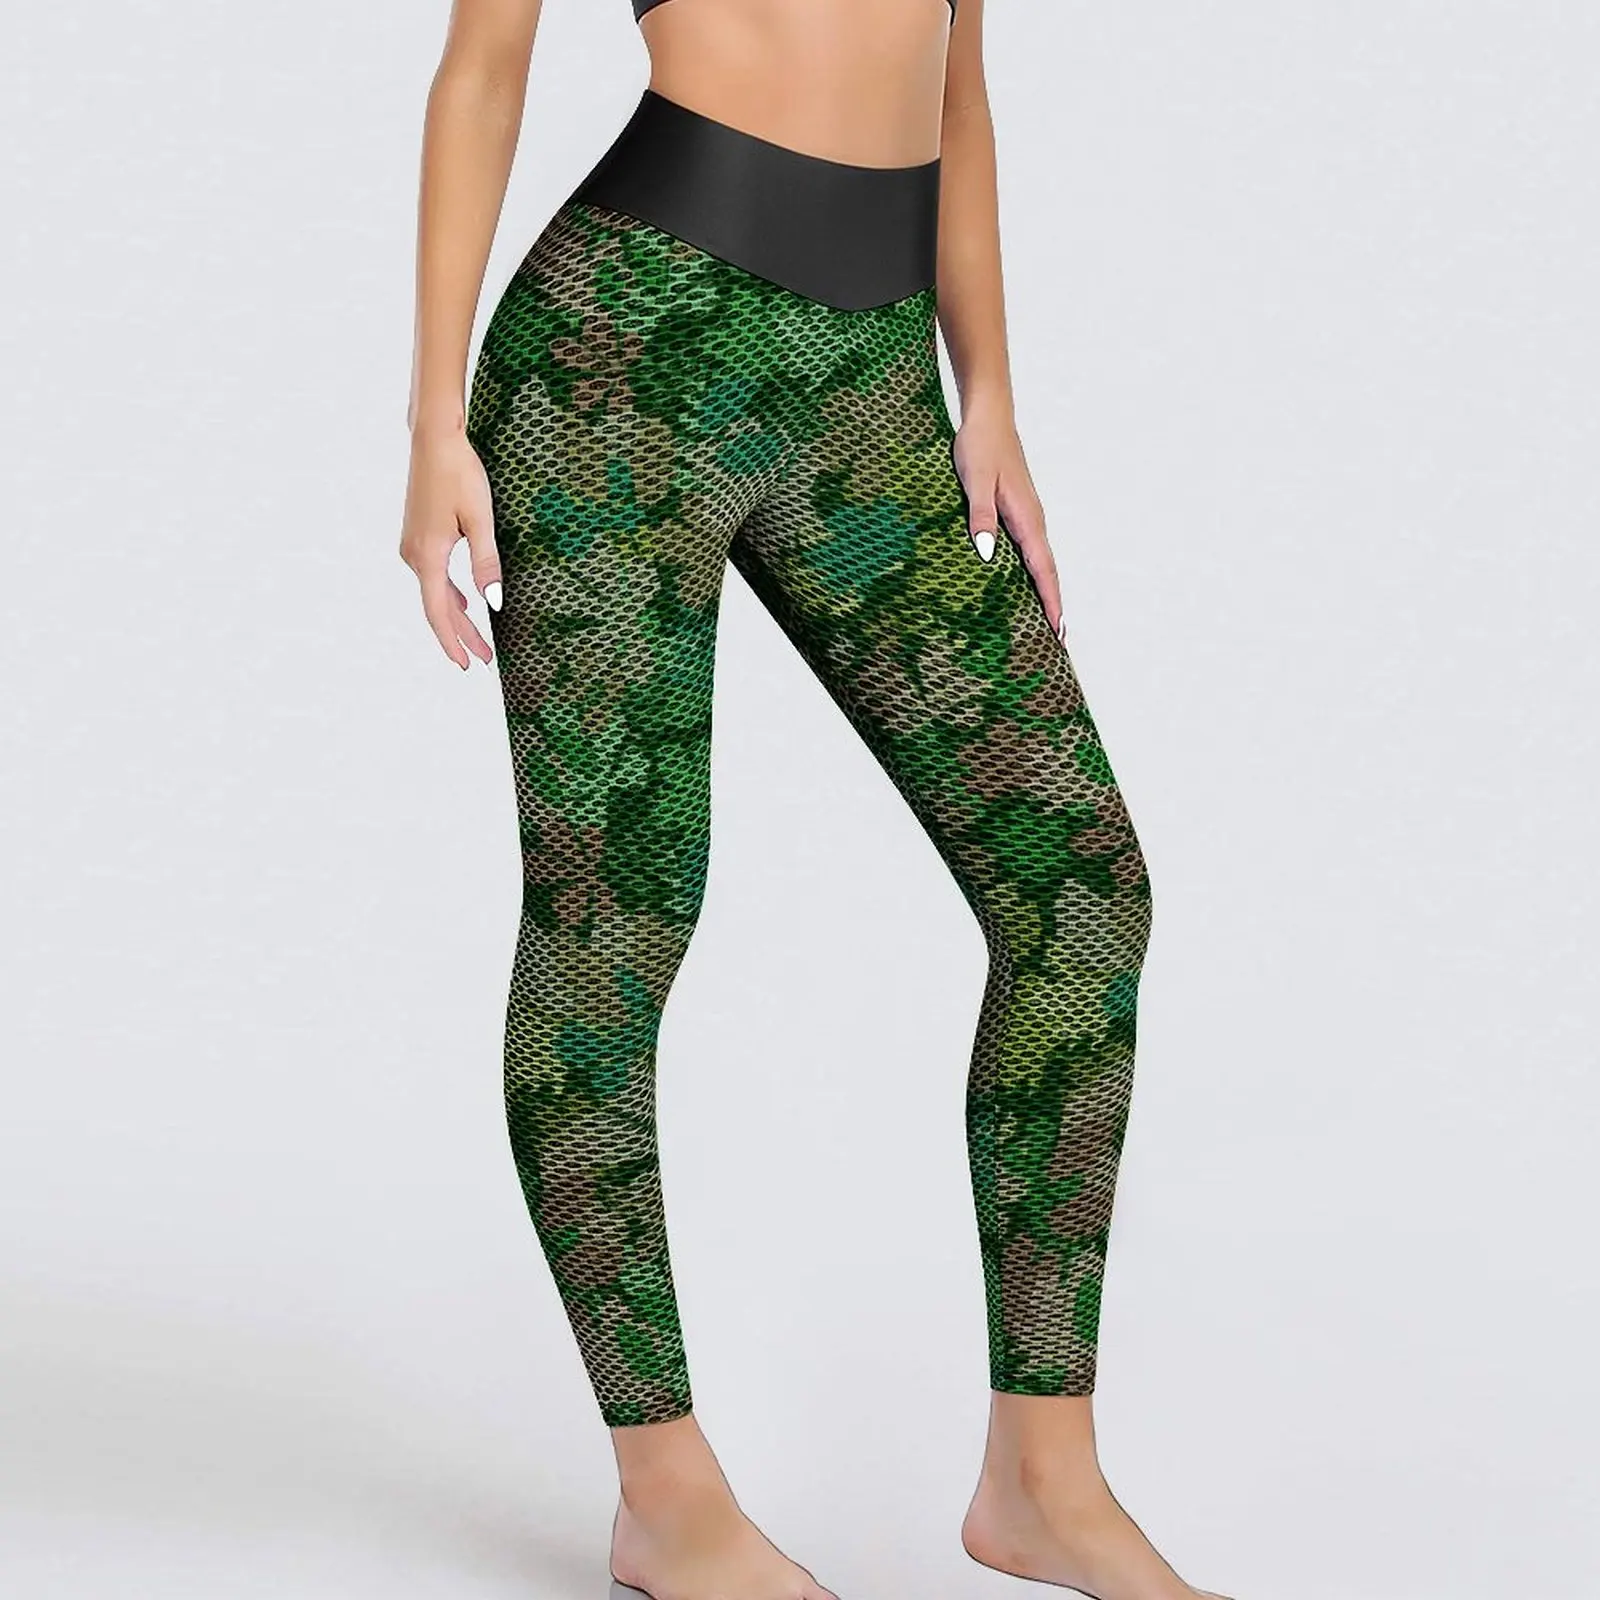 

Штаны для йоги с зелеными листьями, пикантные леггинсы с графическим принтом листьев и леса, леггинсы для тренировок с высокой талией, женские милые бесшовные спортивные колготки